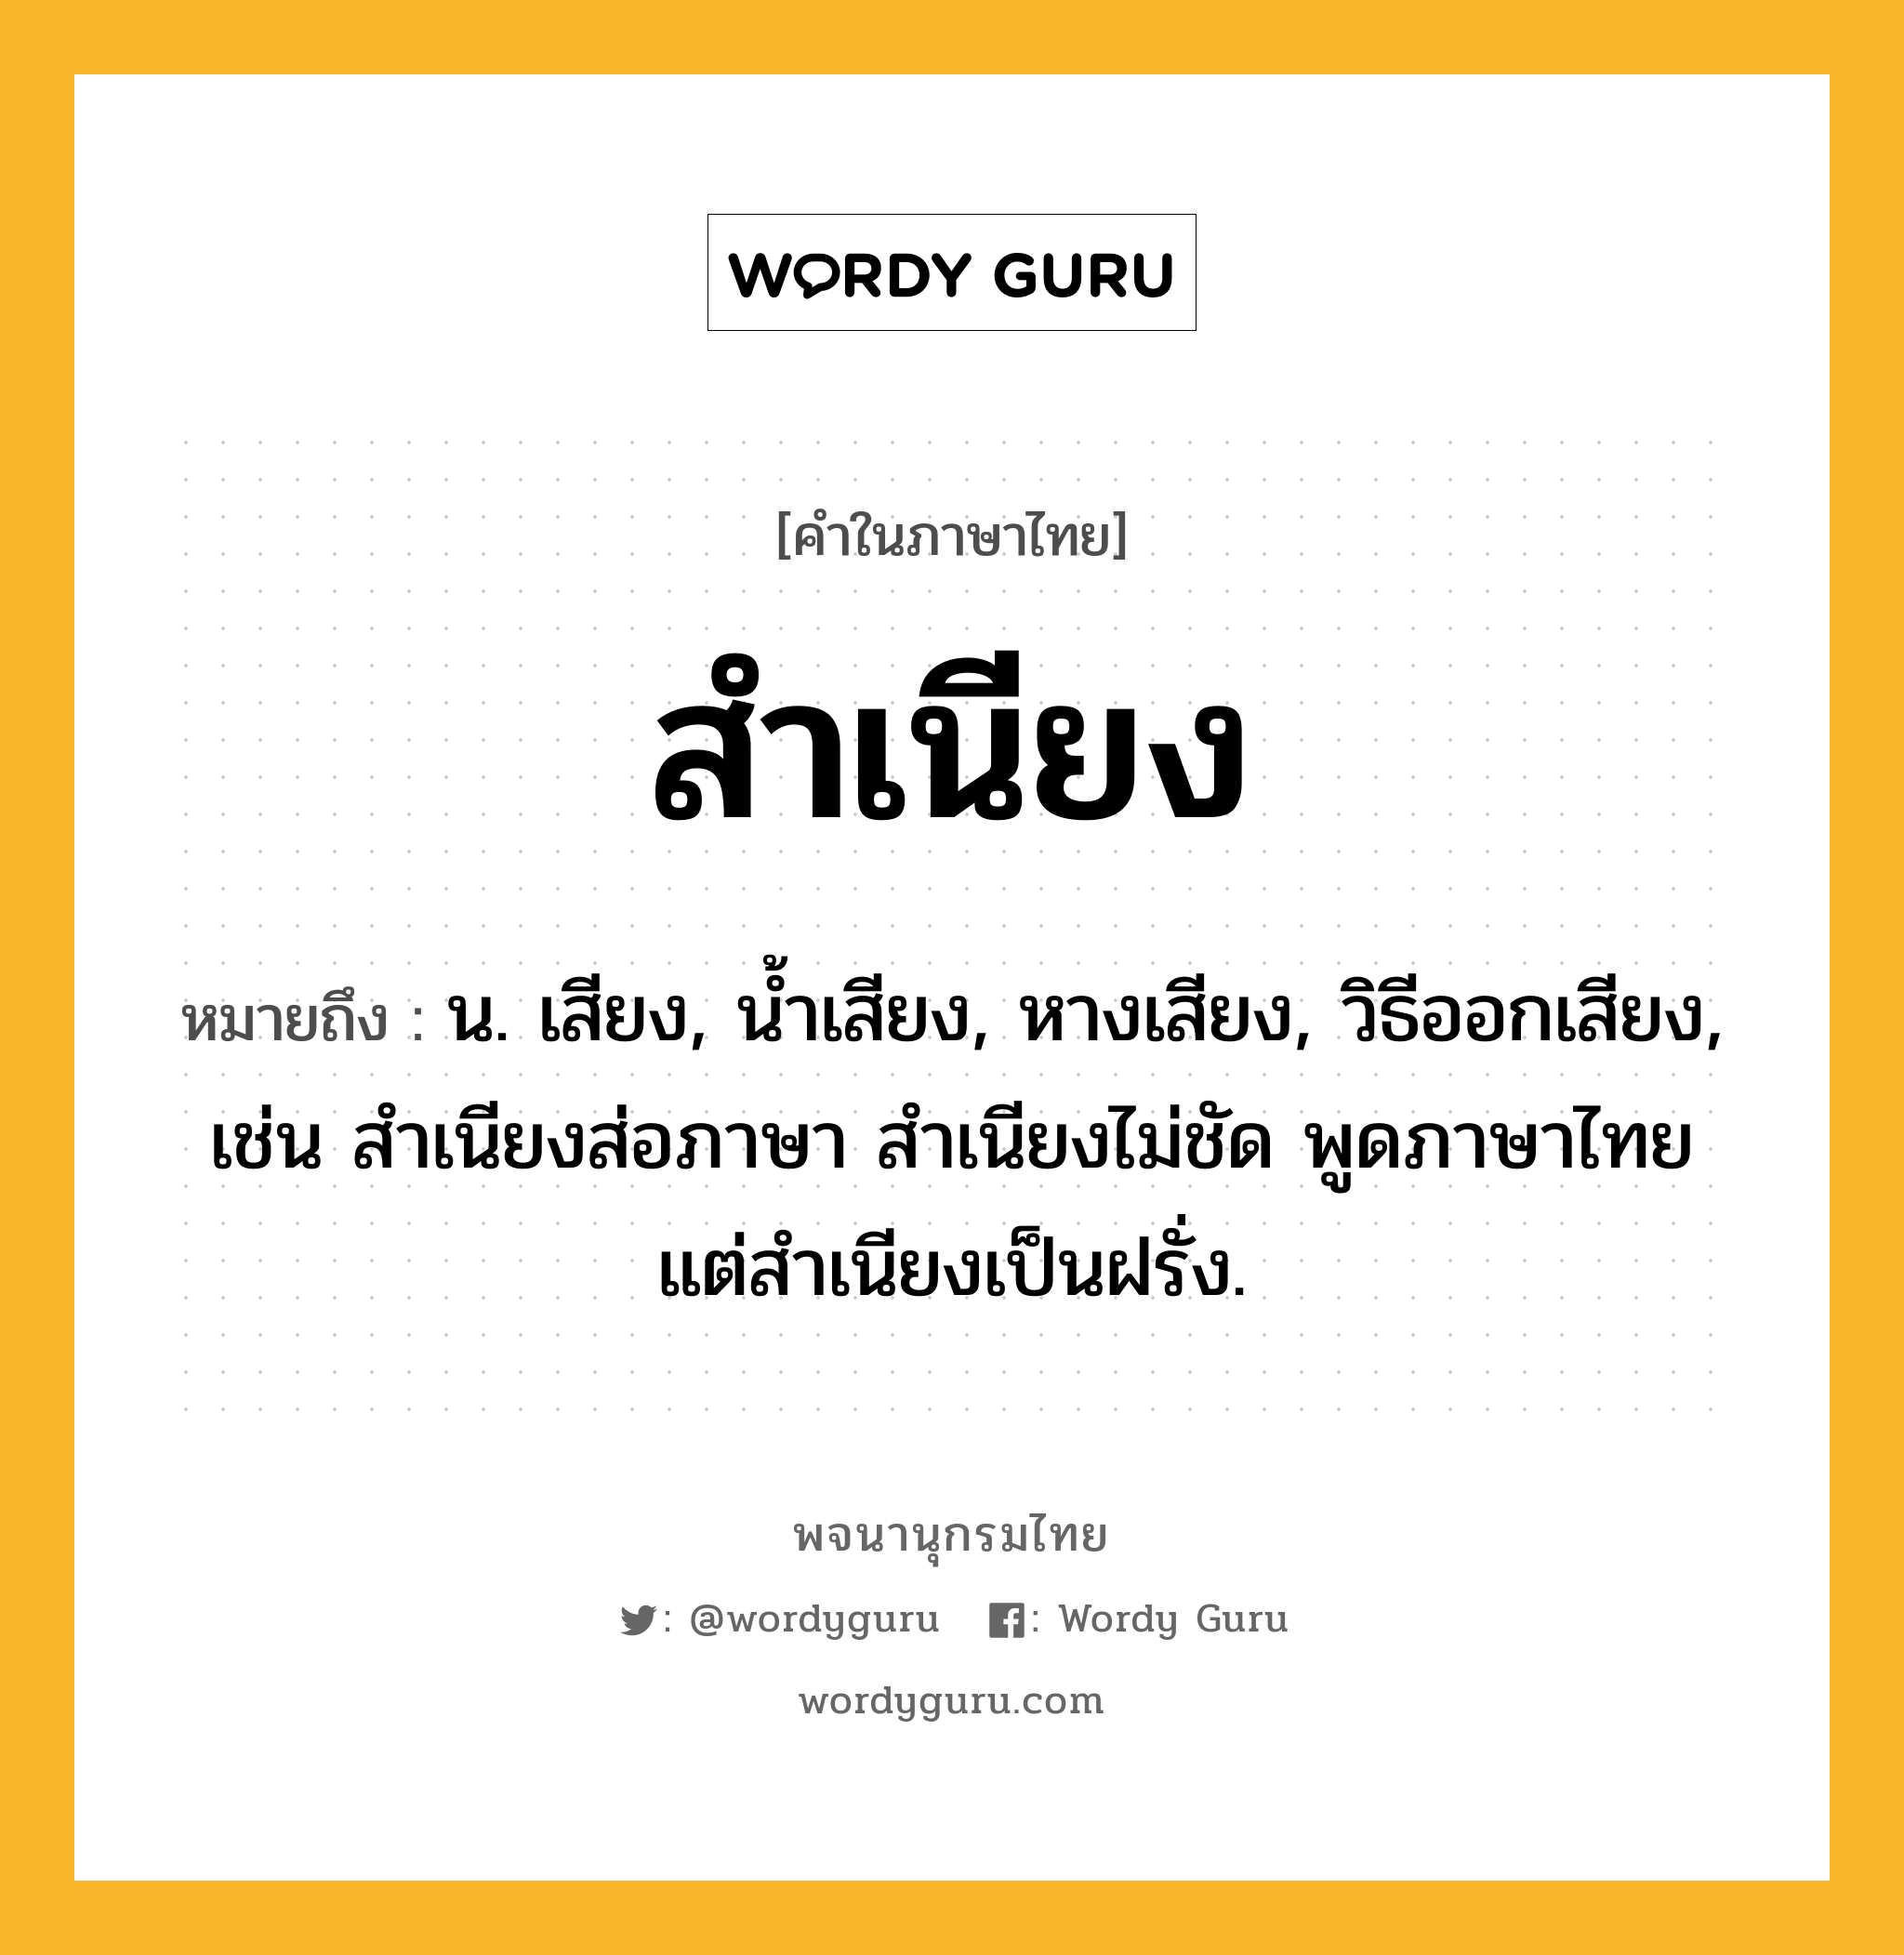 สำเนียง ความหมาย หมายถึงอะไร?, คำในภาษาไทย สำเนียง หมายถึง น. เสียง, นํ้าเสียง, หางเสียง, วิธีออกเสียง, เช่น สําเนียงส่อภาษา สําเนียงไม่ชัด พูดภาษาไทยแต่สำเนียงเป็นฝรั่ง.